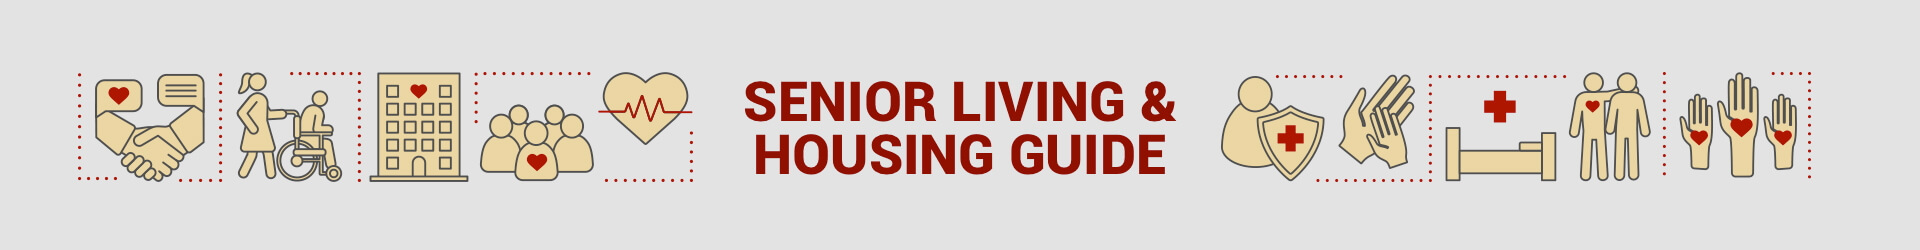 Comprehensive Guide to Senior Living & Housing